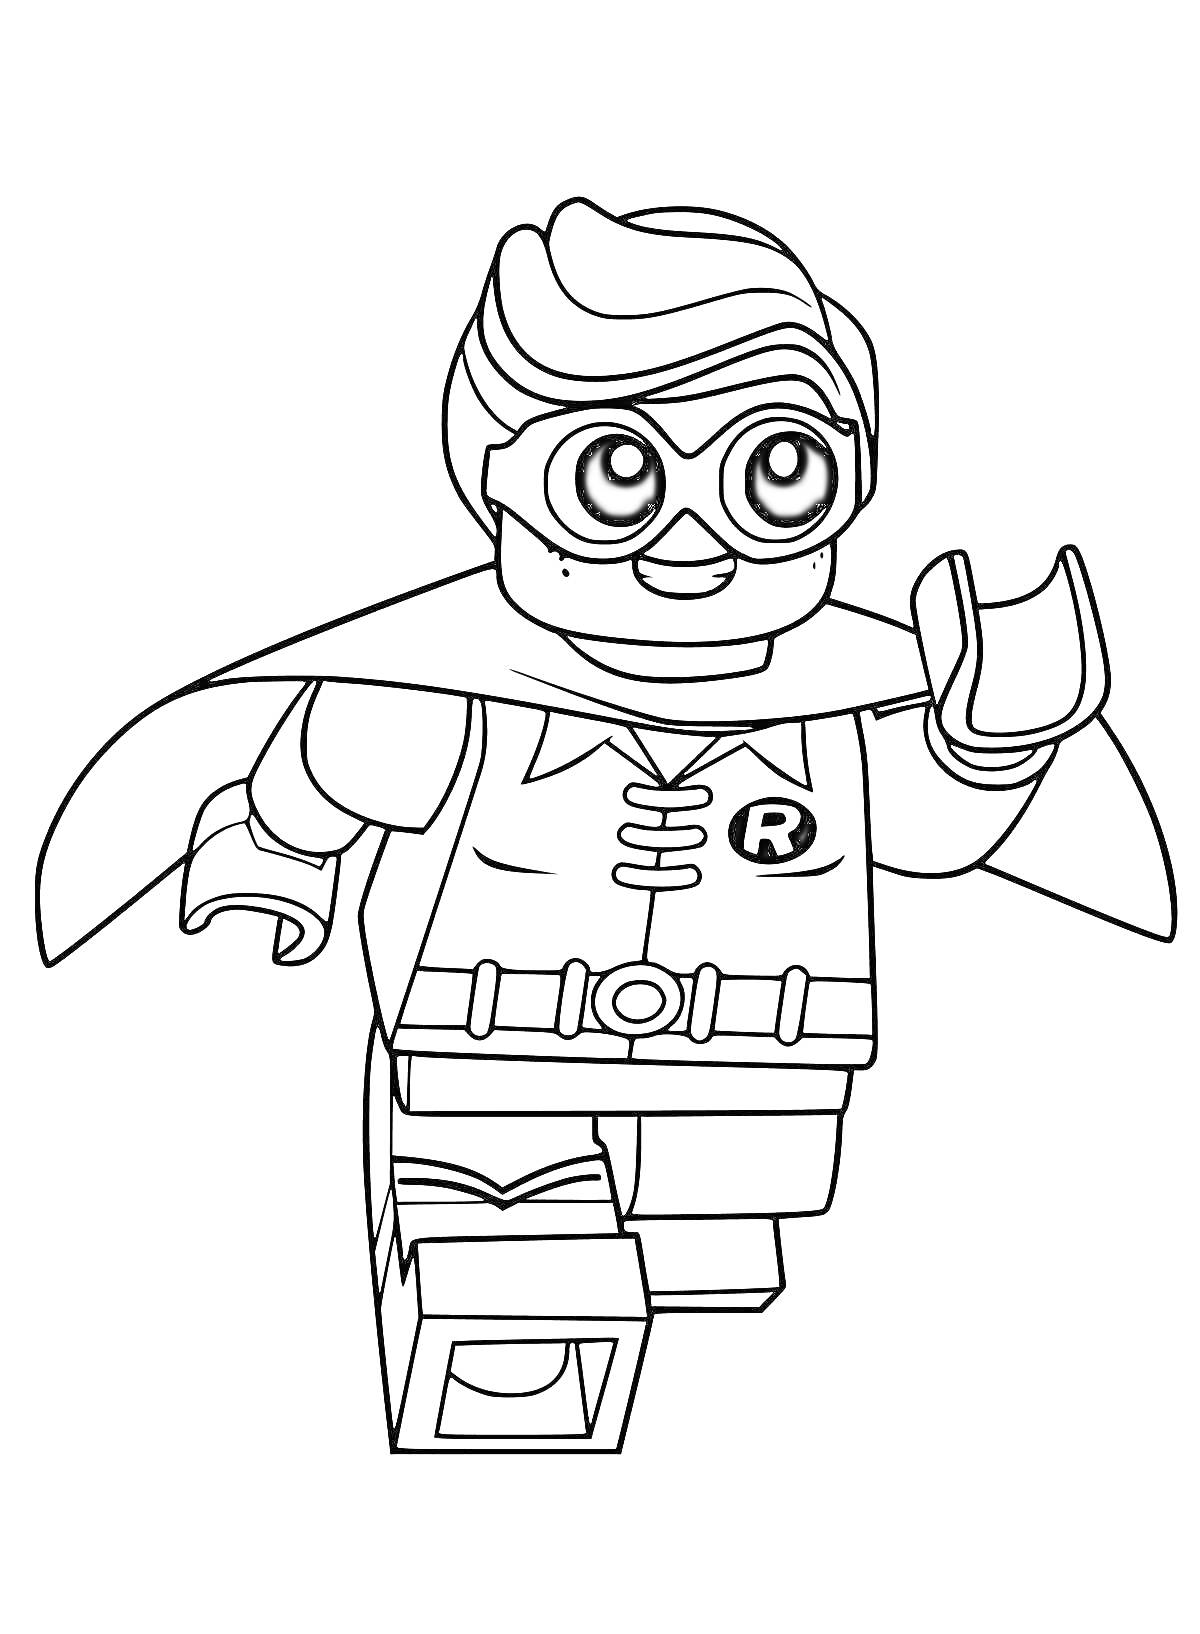 Раскраска Лего персонаж в героическом костюме с буквой 